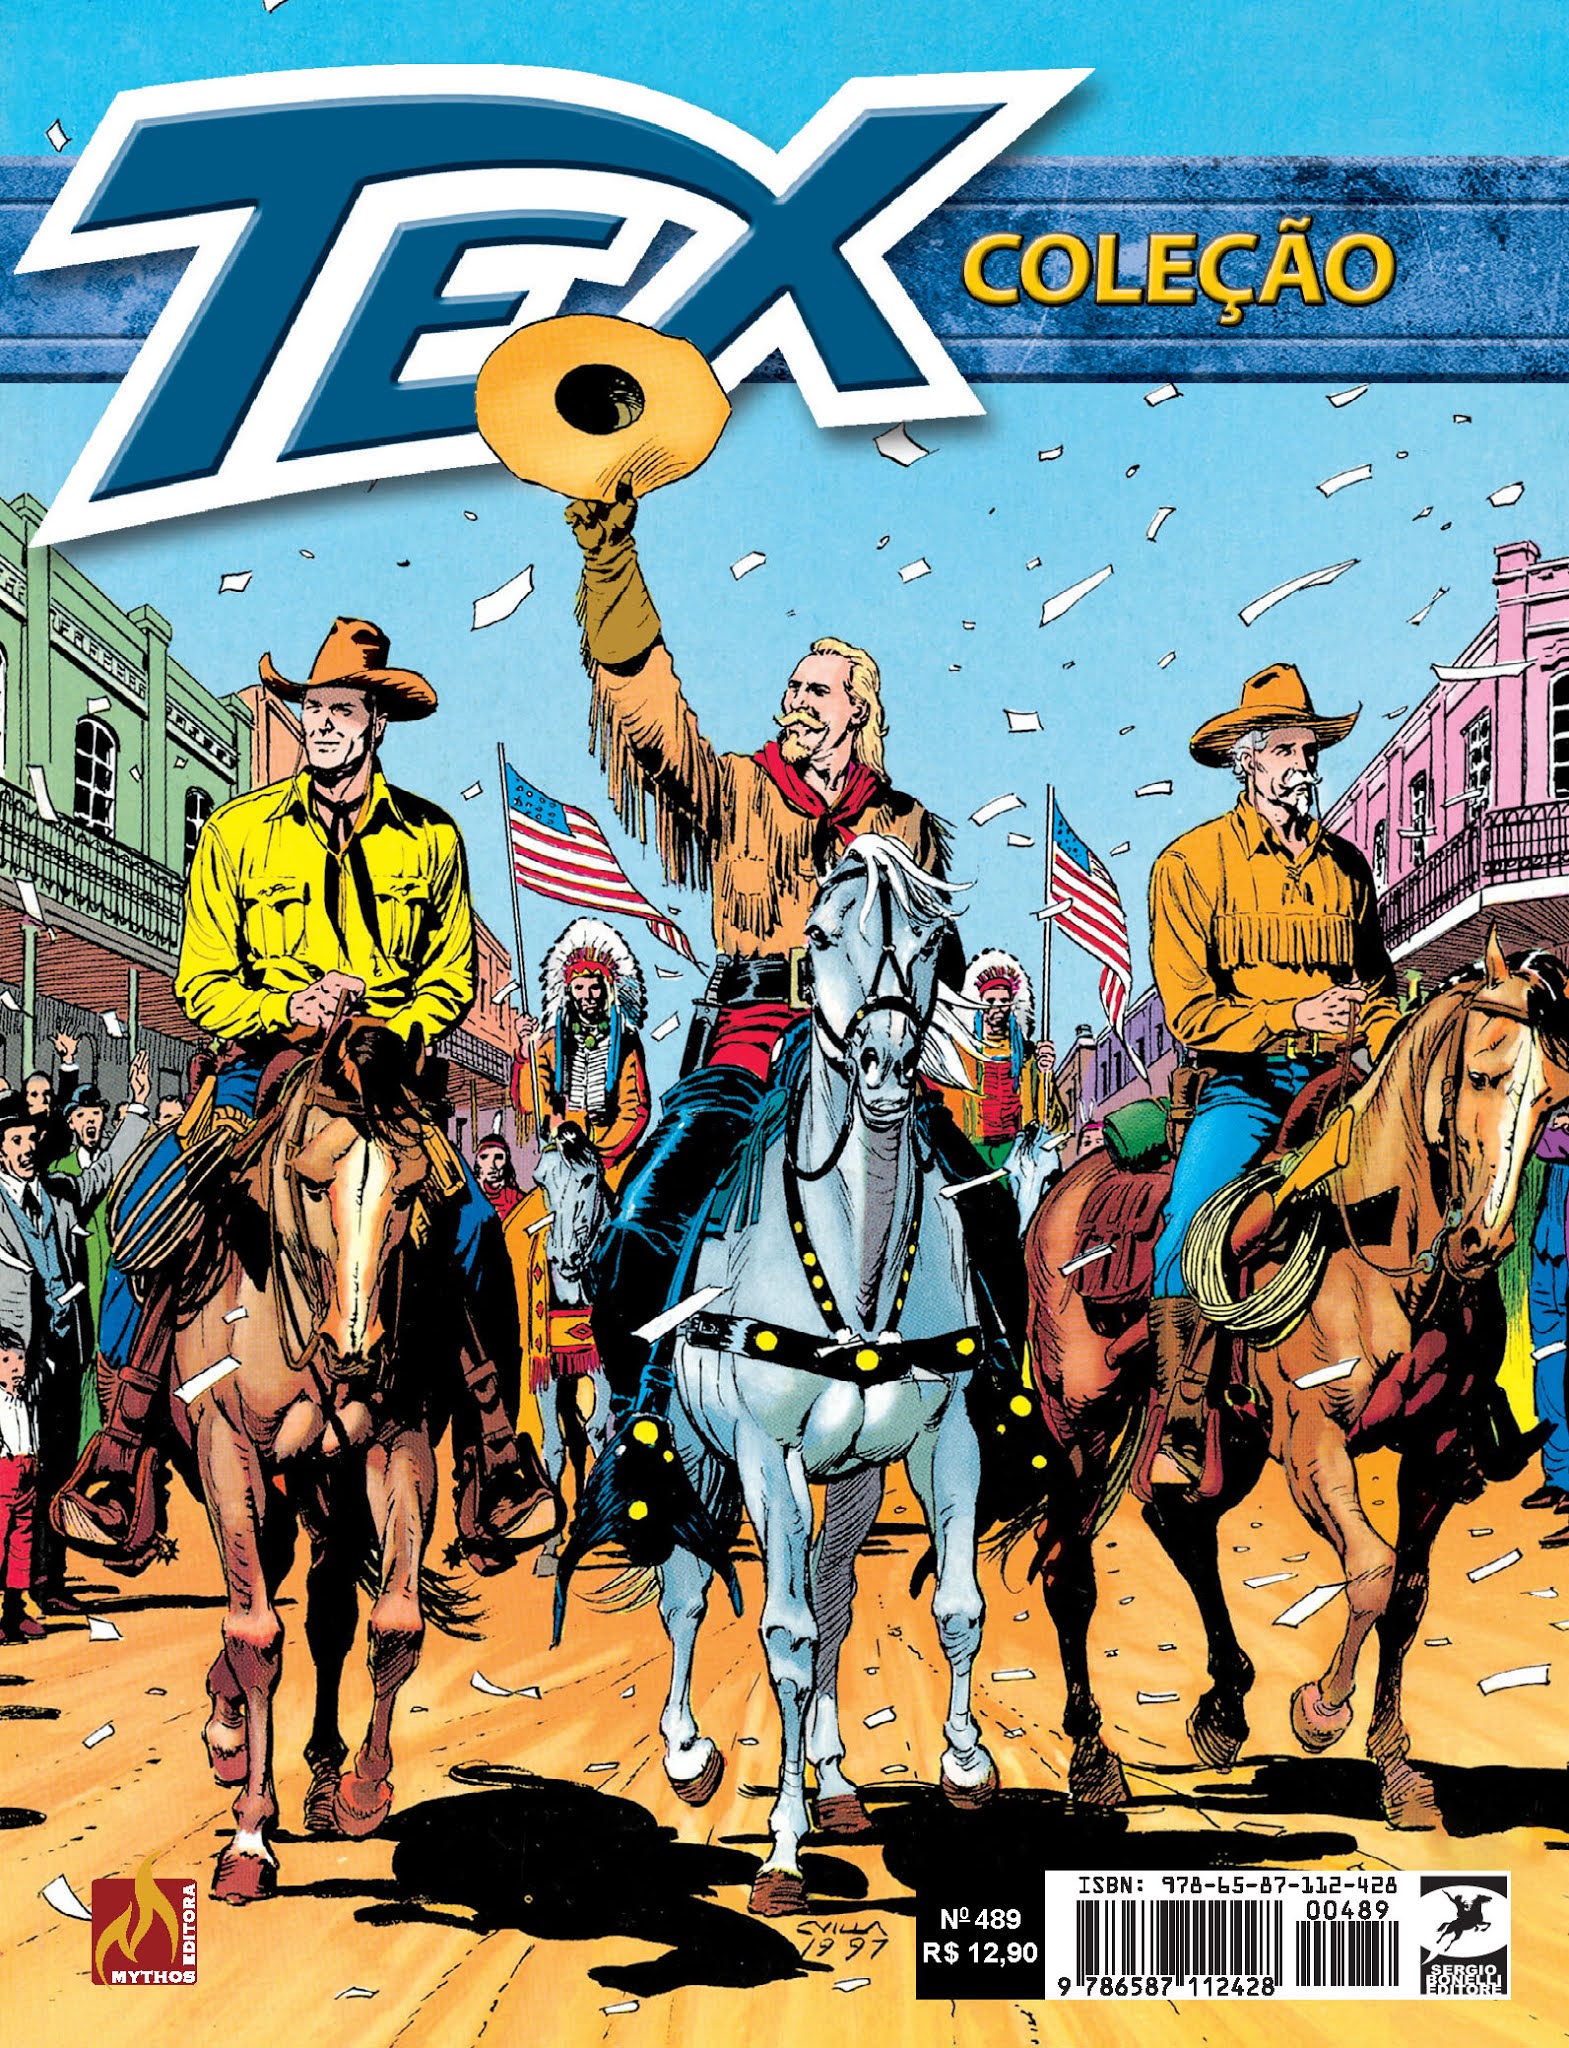 HQ Quadrinhos: CARECA by Alain Voss  Super herois brasileiros, Super  herói, Gibis antigos